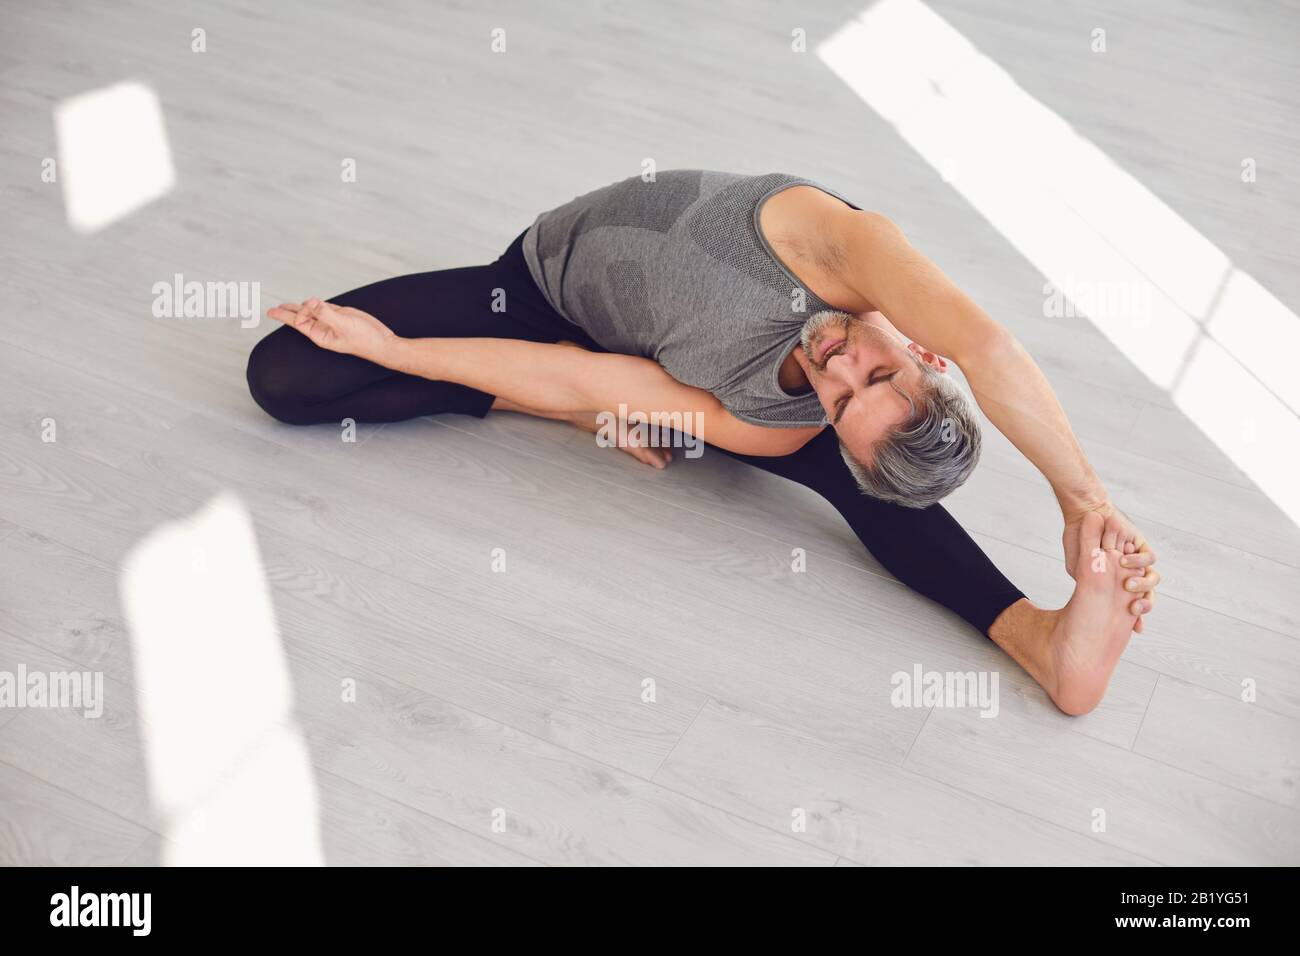 Yoga-Mann. Ein Mann übt Yoga-Balance in einem grauen Raum. Stockfoto